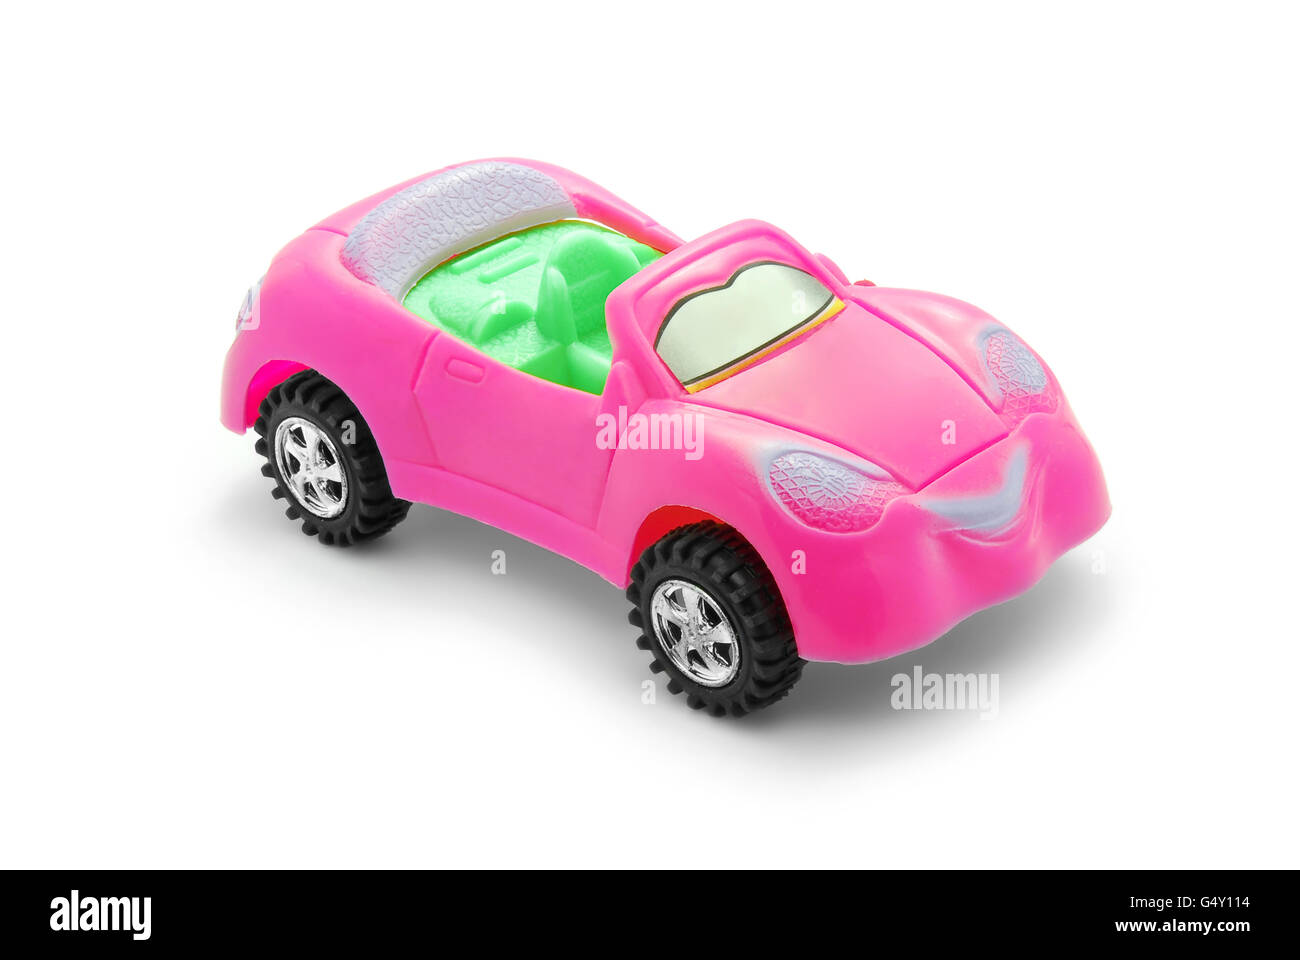 voiture jouet rose Banque D'Images